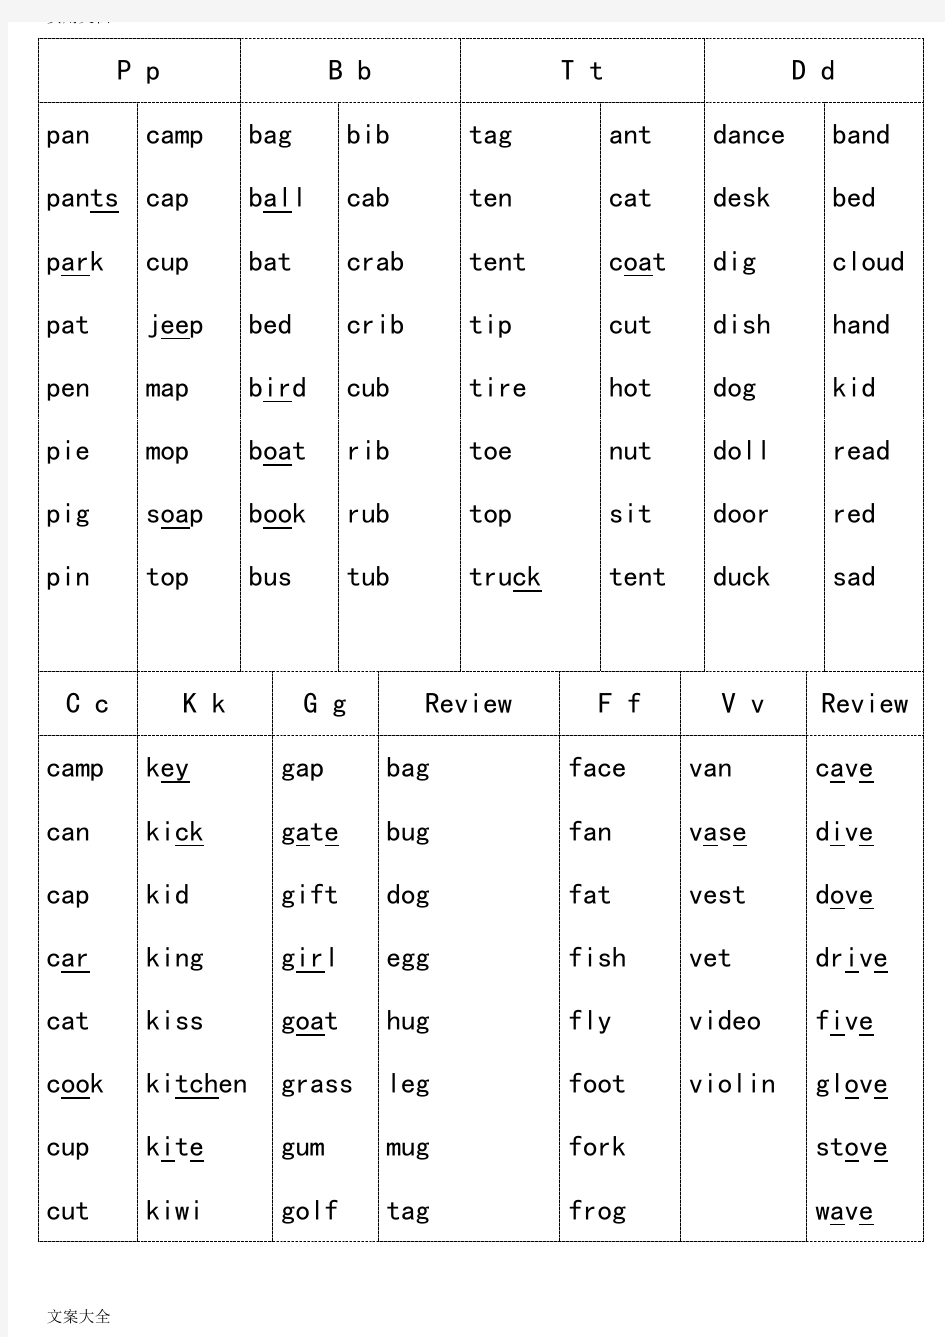 自然拼读法(字母组合发音)17944讲课教案